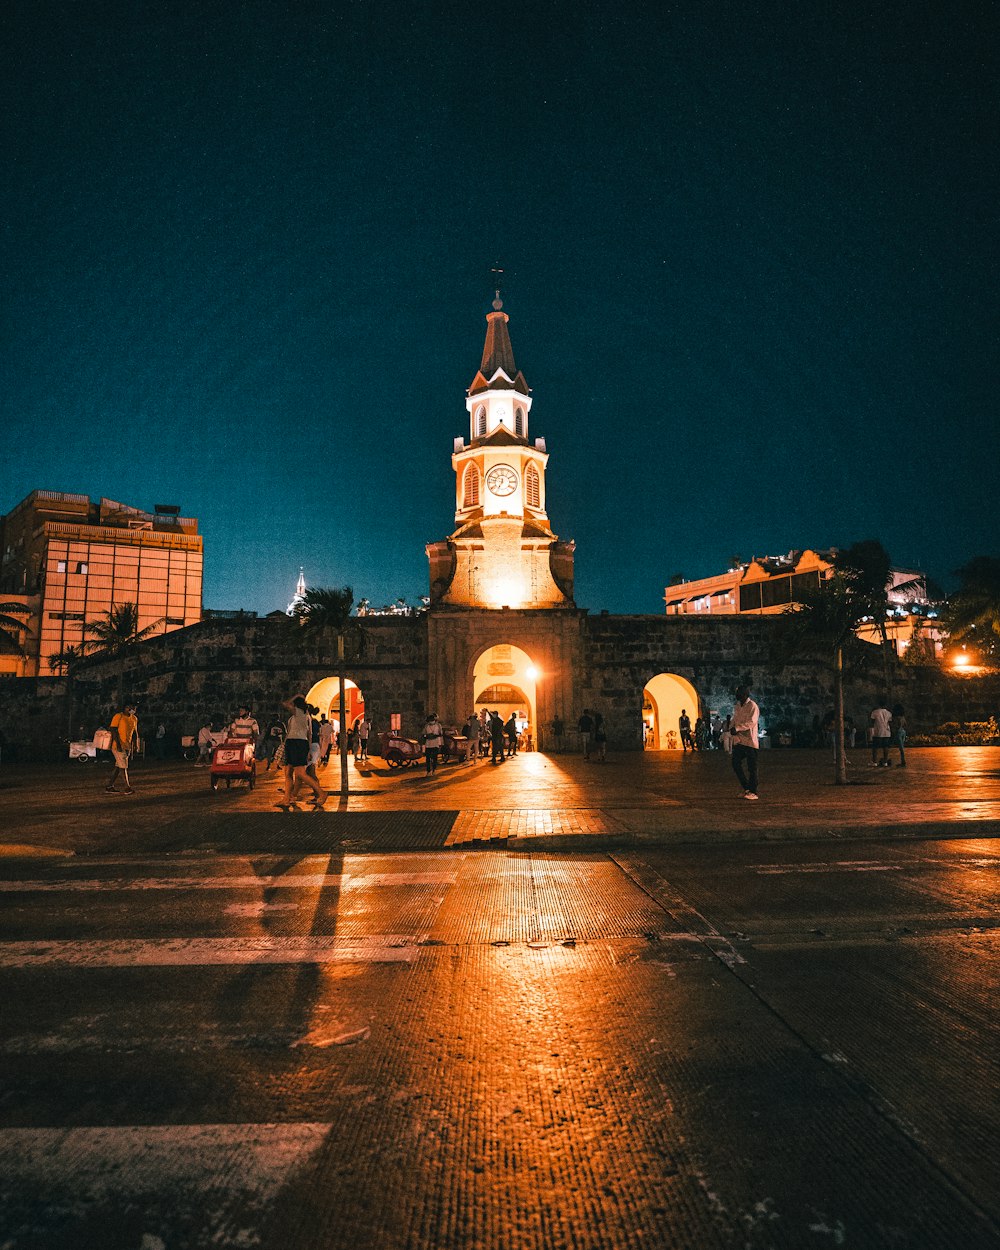 Ein nachts beleuchteter Glockenturm in einer Stadt